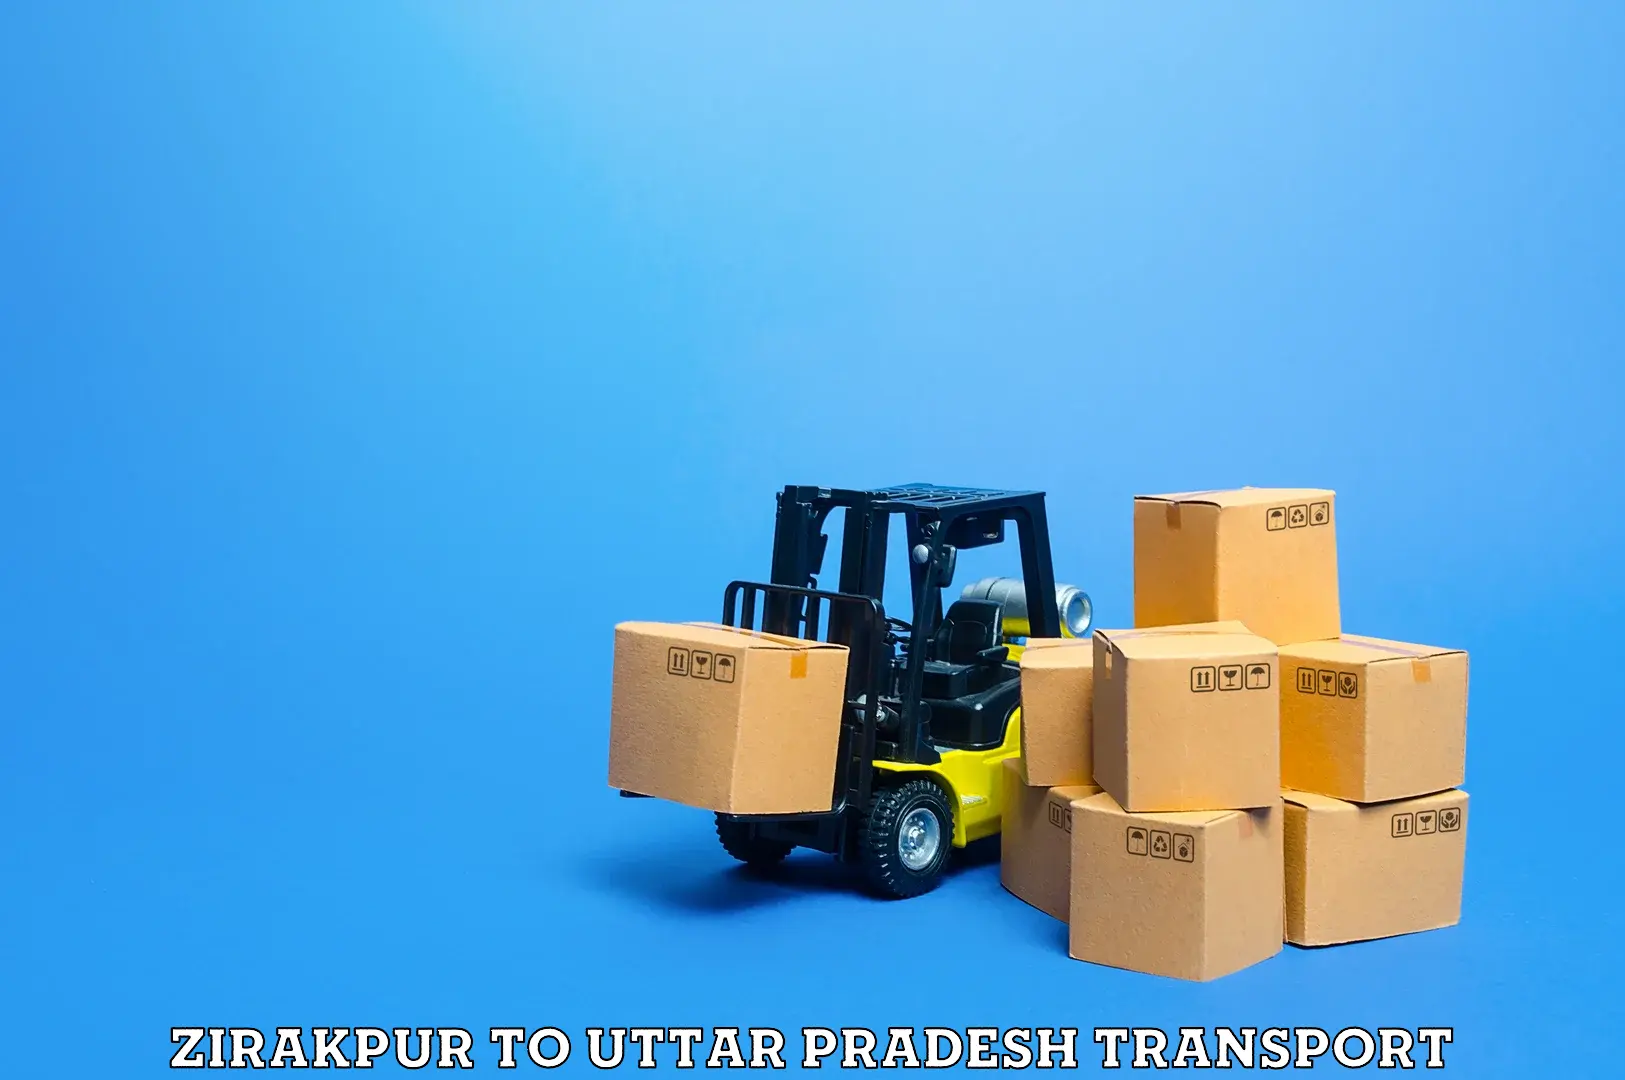 Truck transport companies in India Zirakpur to Chandauli